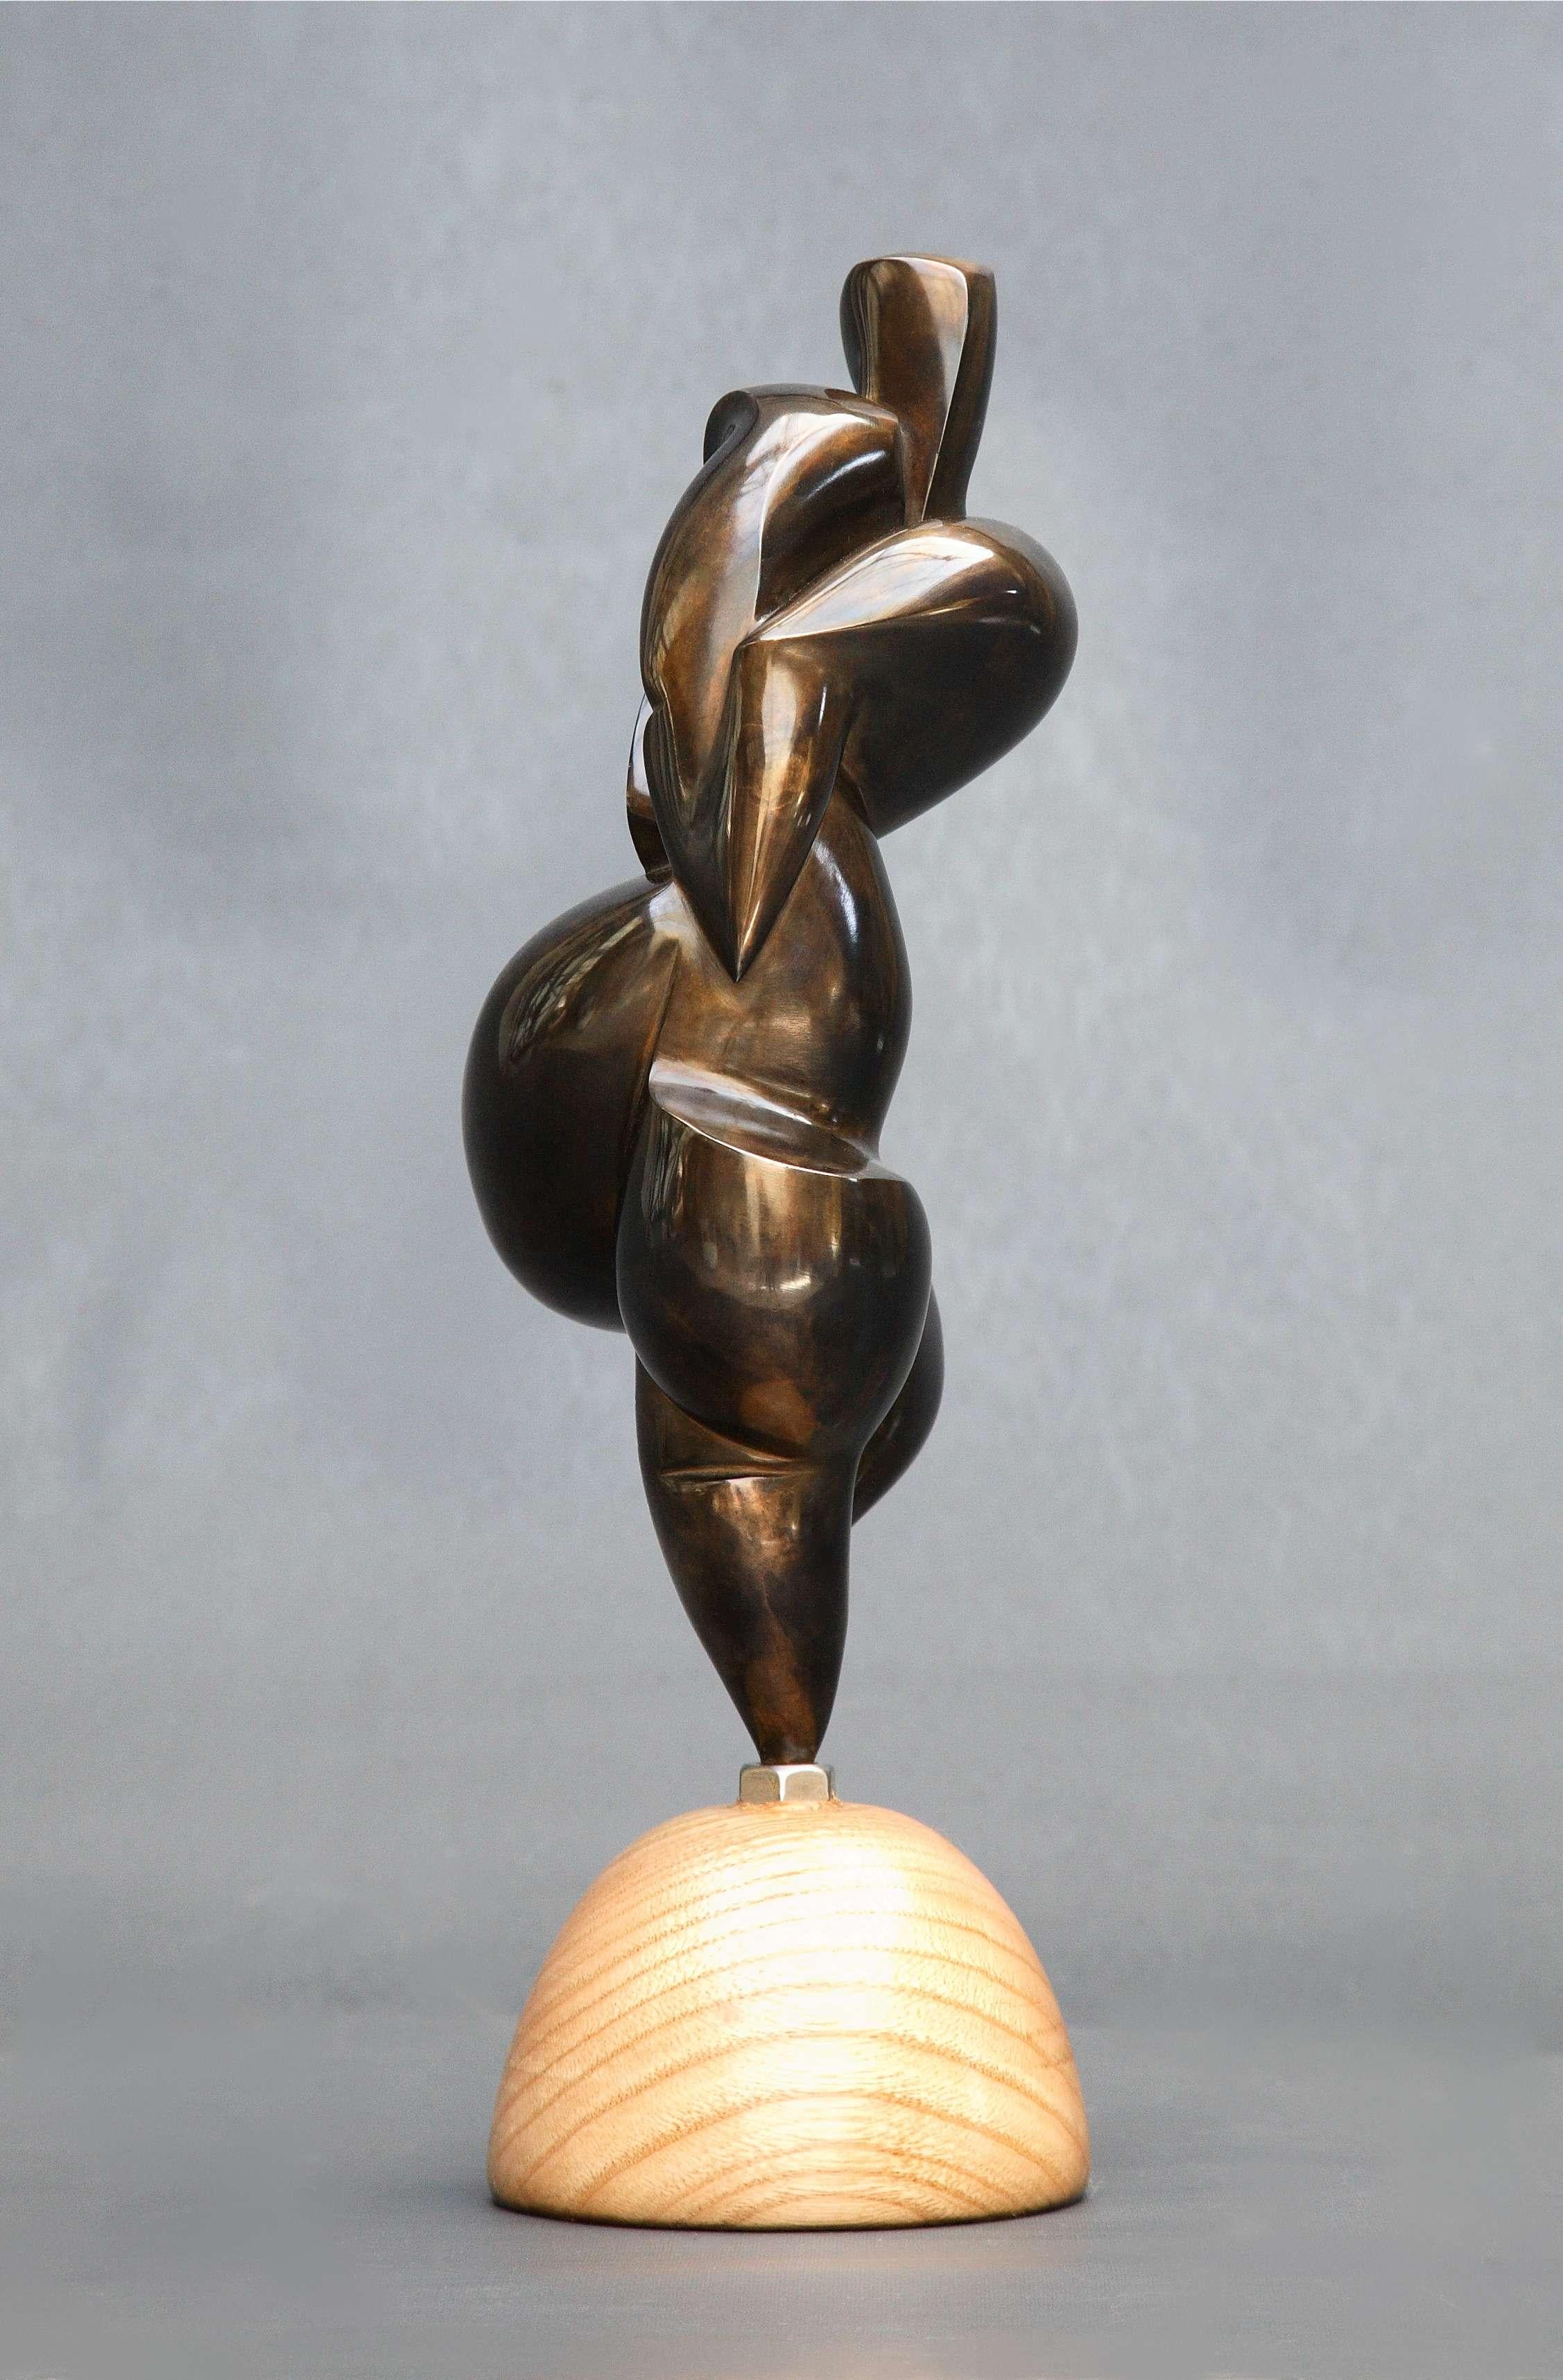 Pollès - Sculpture en bronze - Ahlem
Bronze
1/4
Créé en 2013, coulé en 2014
20 x 13 x 11 cm
Signé et numéroté

BIOGRAPHIE
Pollès est né à Paris en 1945
Comme Léonard de Vinci à la recherche de la perfection anatomique, de la représentation du